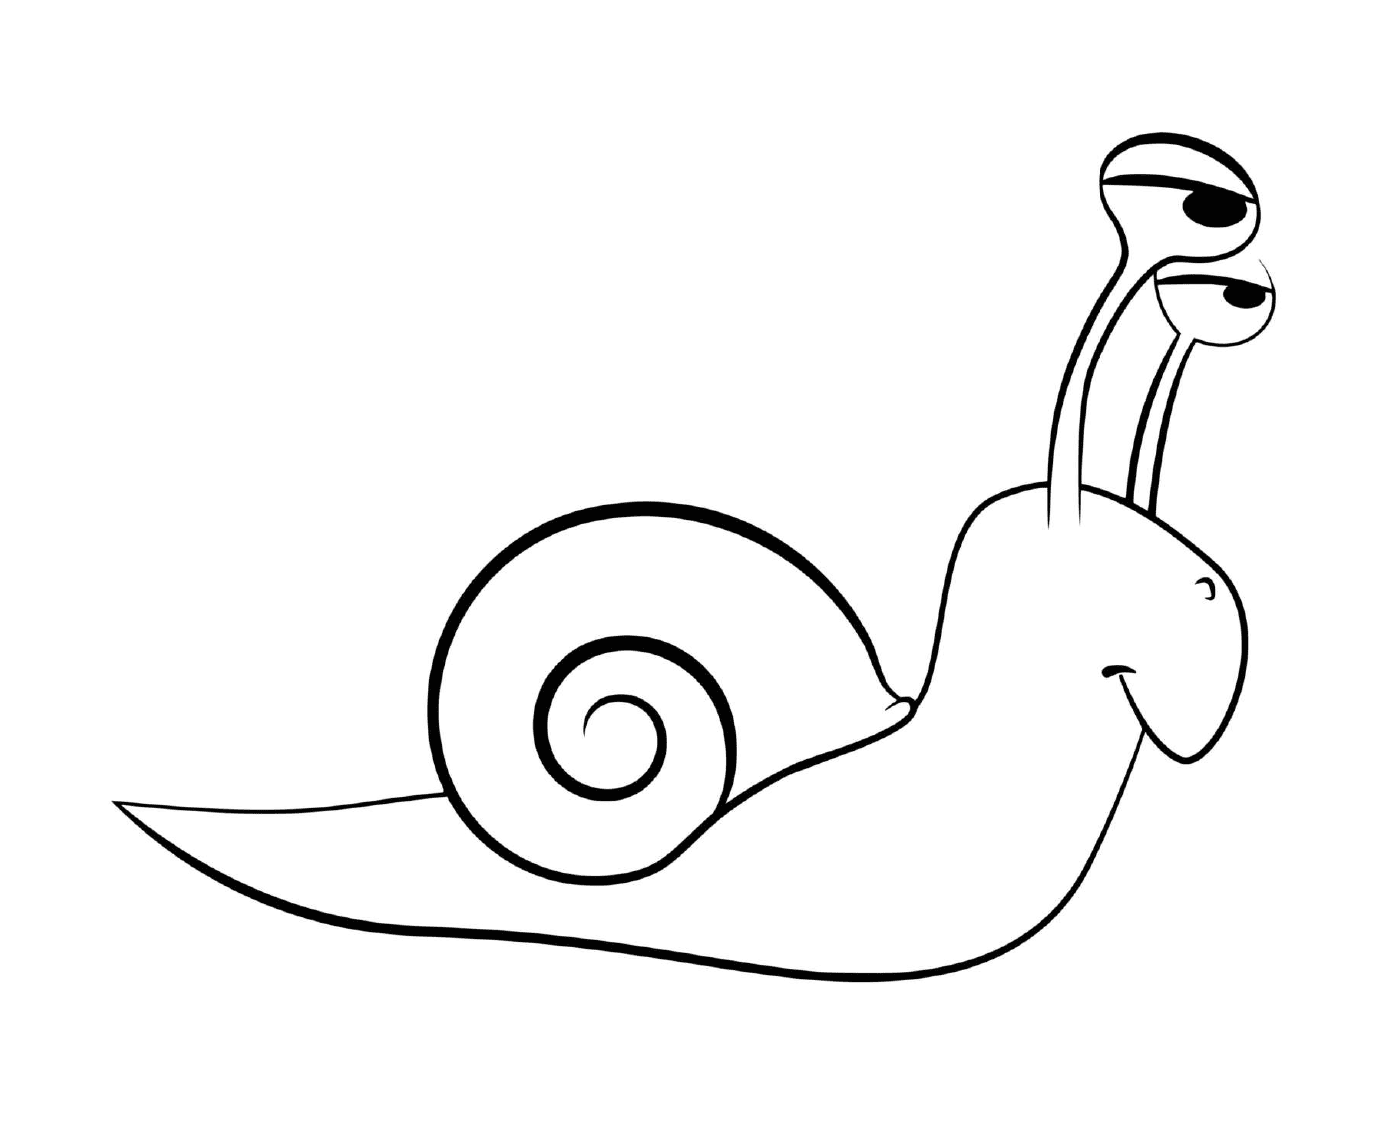  Small funny cartoon snail 